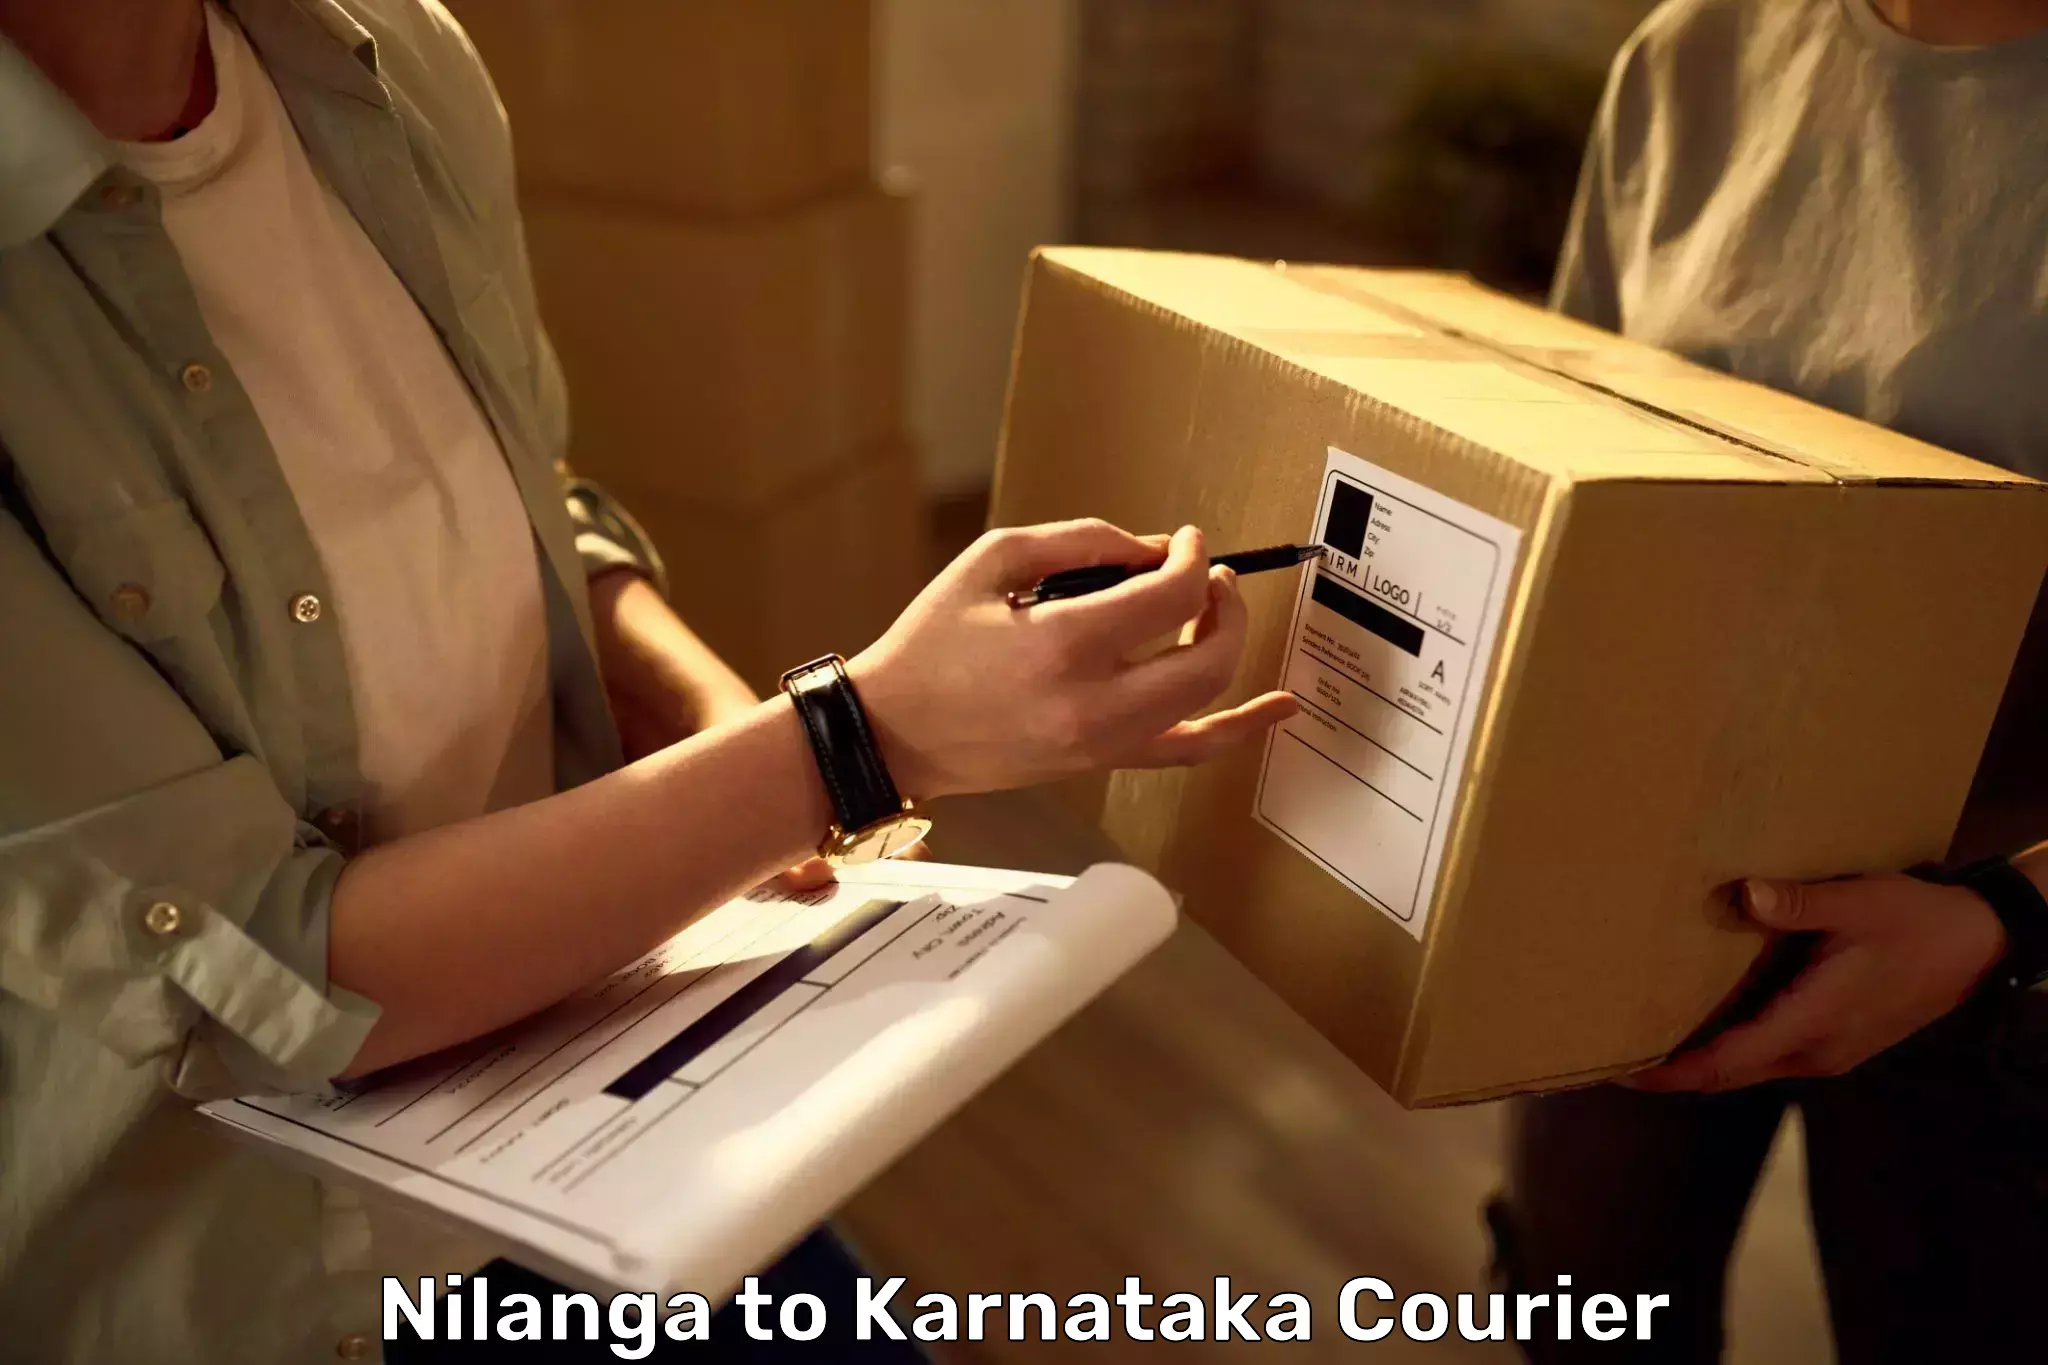 Business luggage transport Nilanga to Kanjarakatte